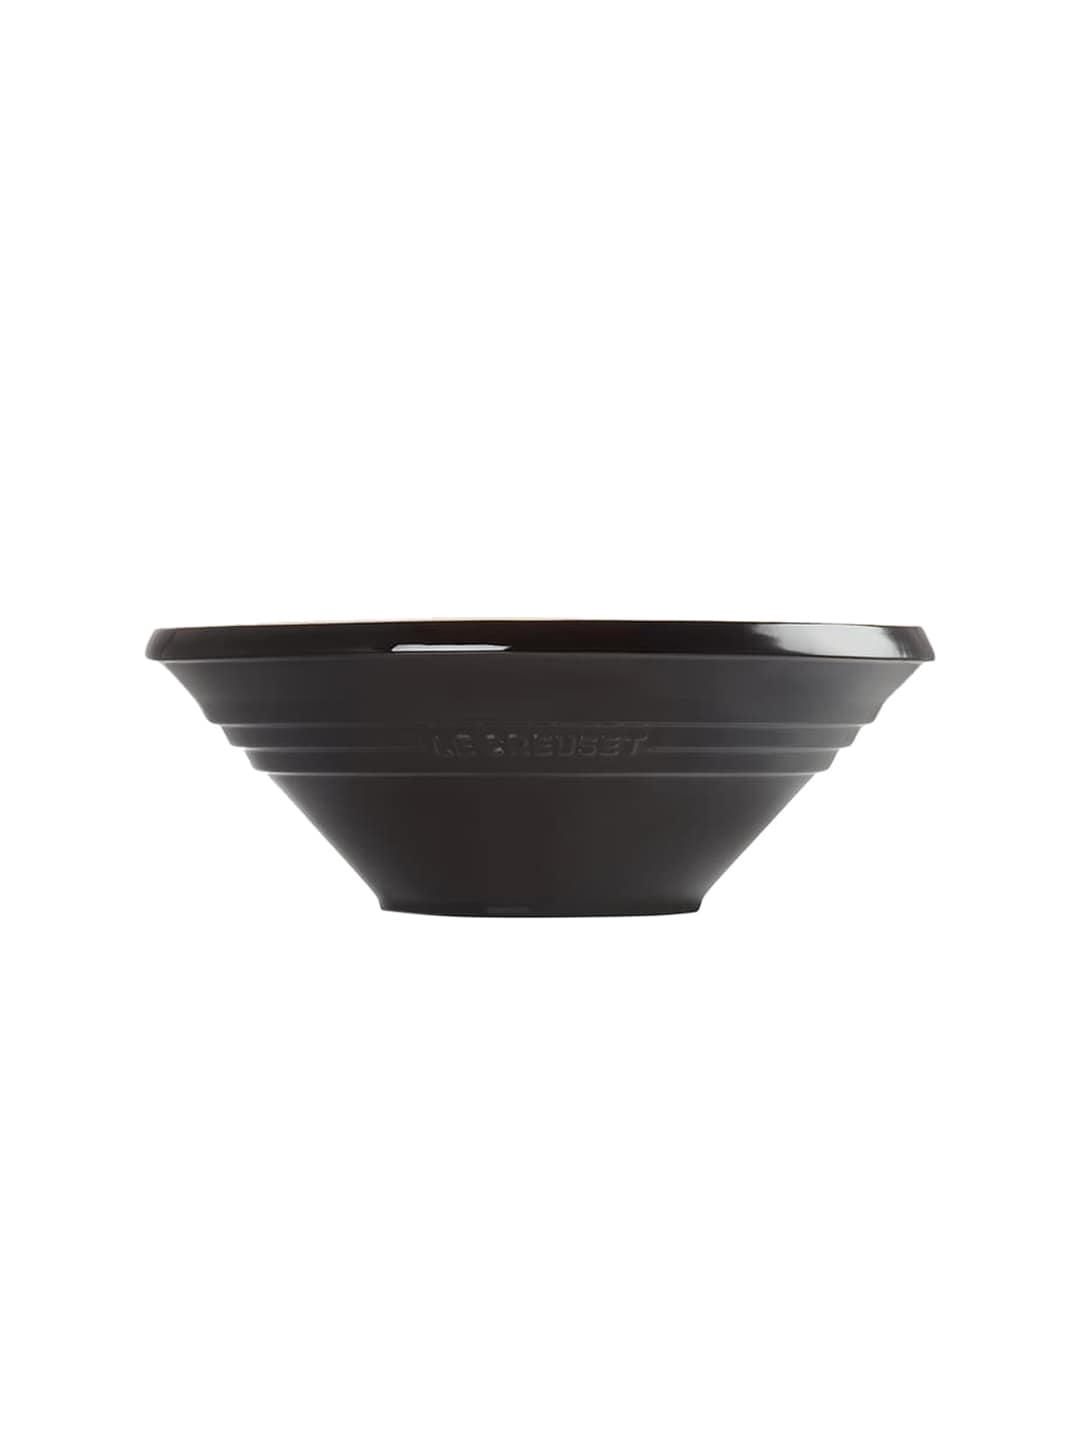 LE CREUSET Black Solid Ceramic Serving Bowl Price in India